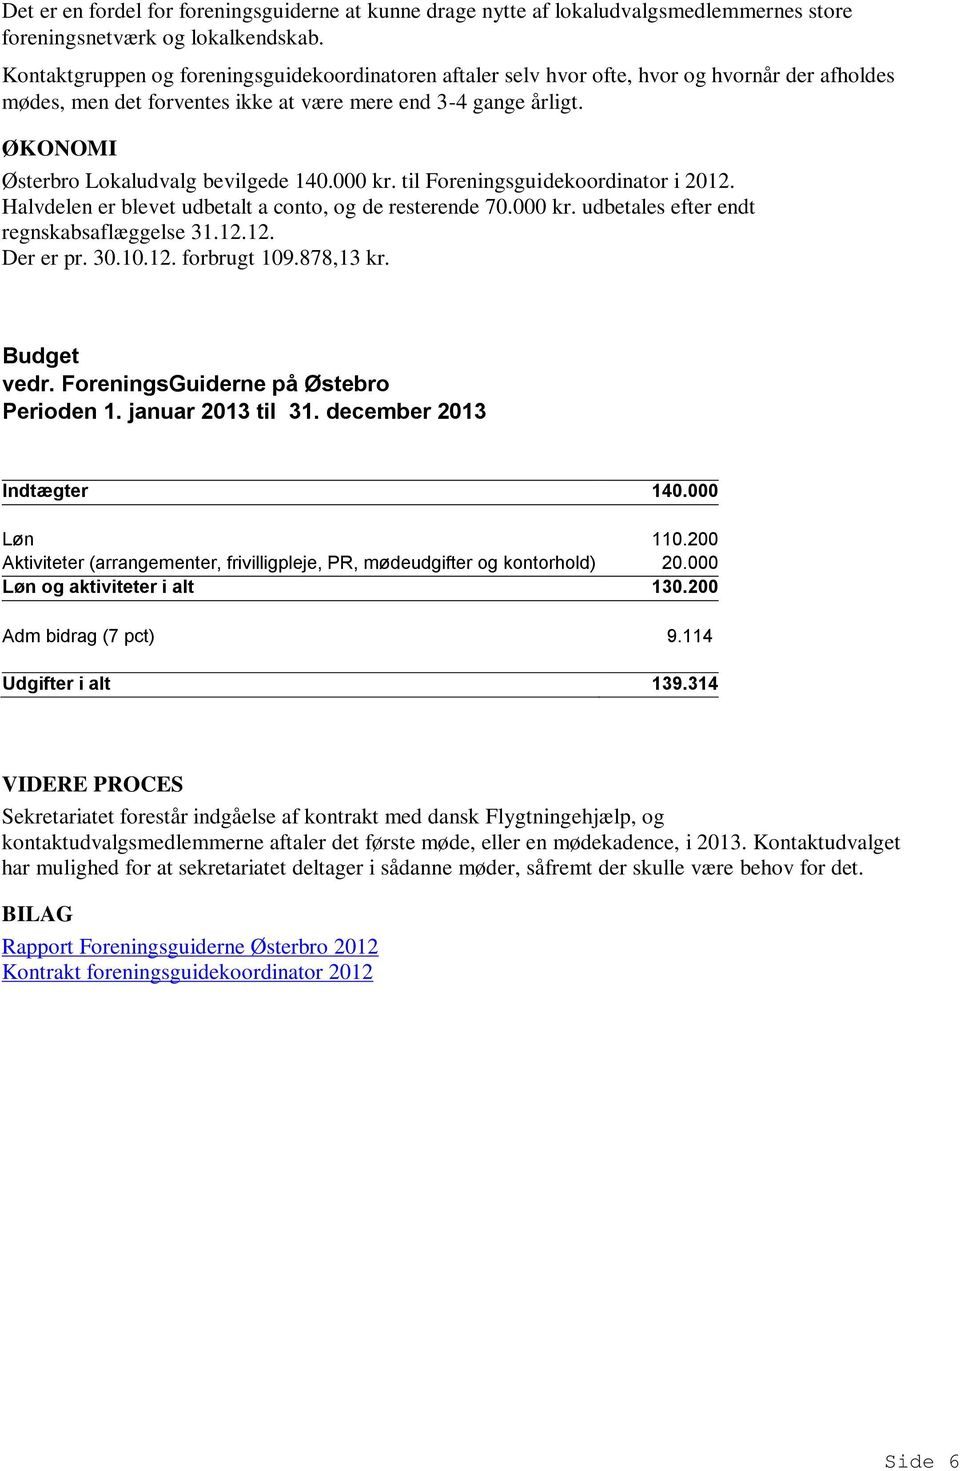 ØKONOMI Østerbro Lokaludvalg bevilgede 140.000 kr. til Foreningsguidekoordinator i 2012. Halvdelen er blevet udbetalt a conto, og de resterende 70.000 kr. udbetales efter endt regnskabsaflæggelse 31.